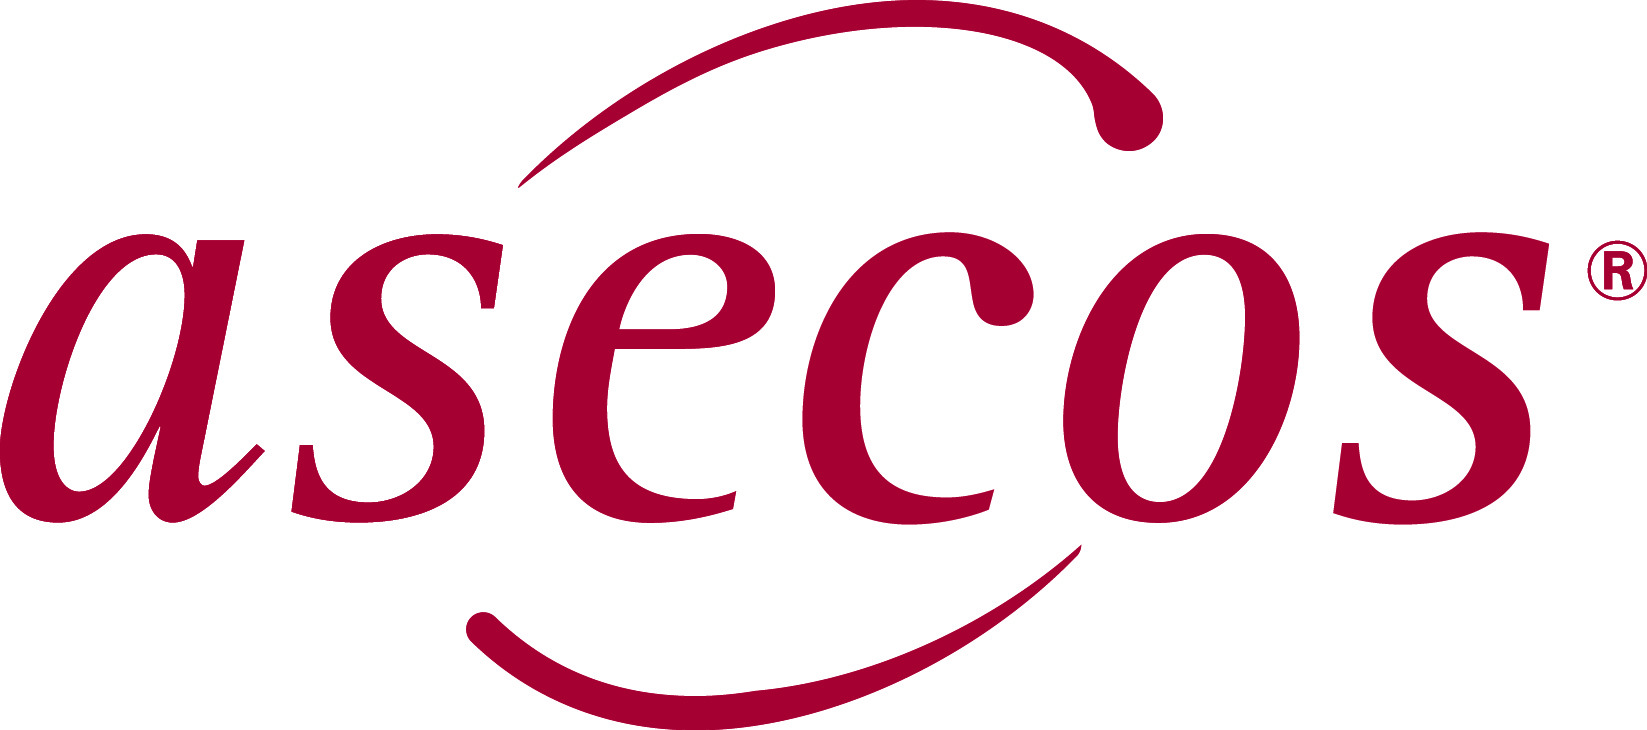 asecos GmbH
Sicherheit und
Umweltschutz